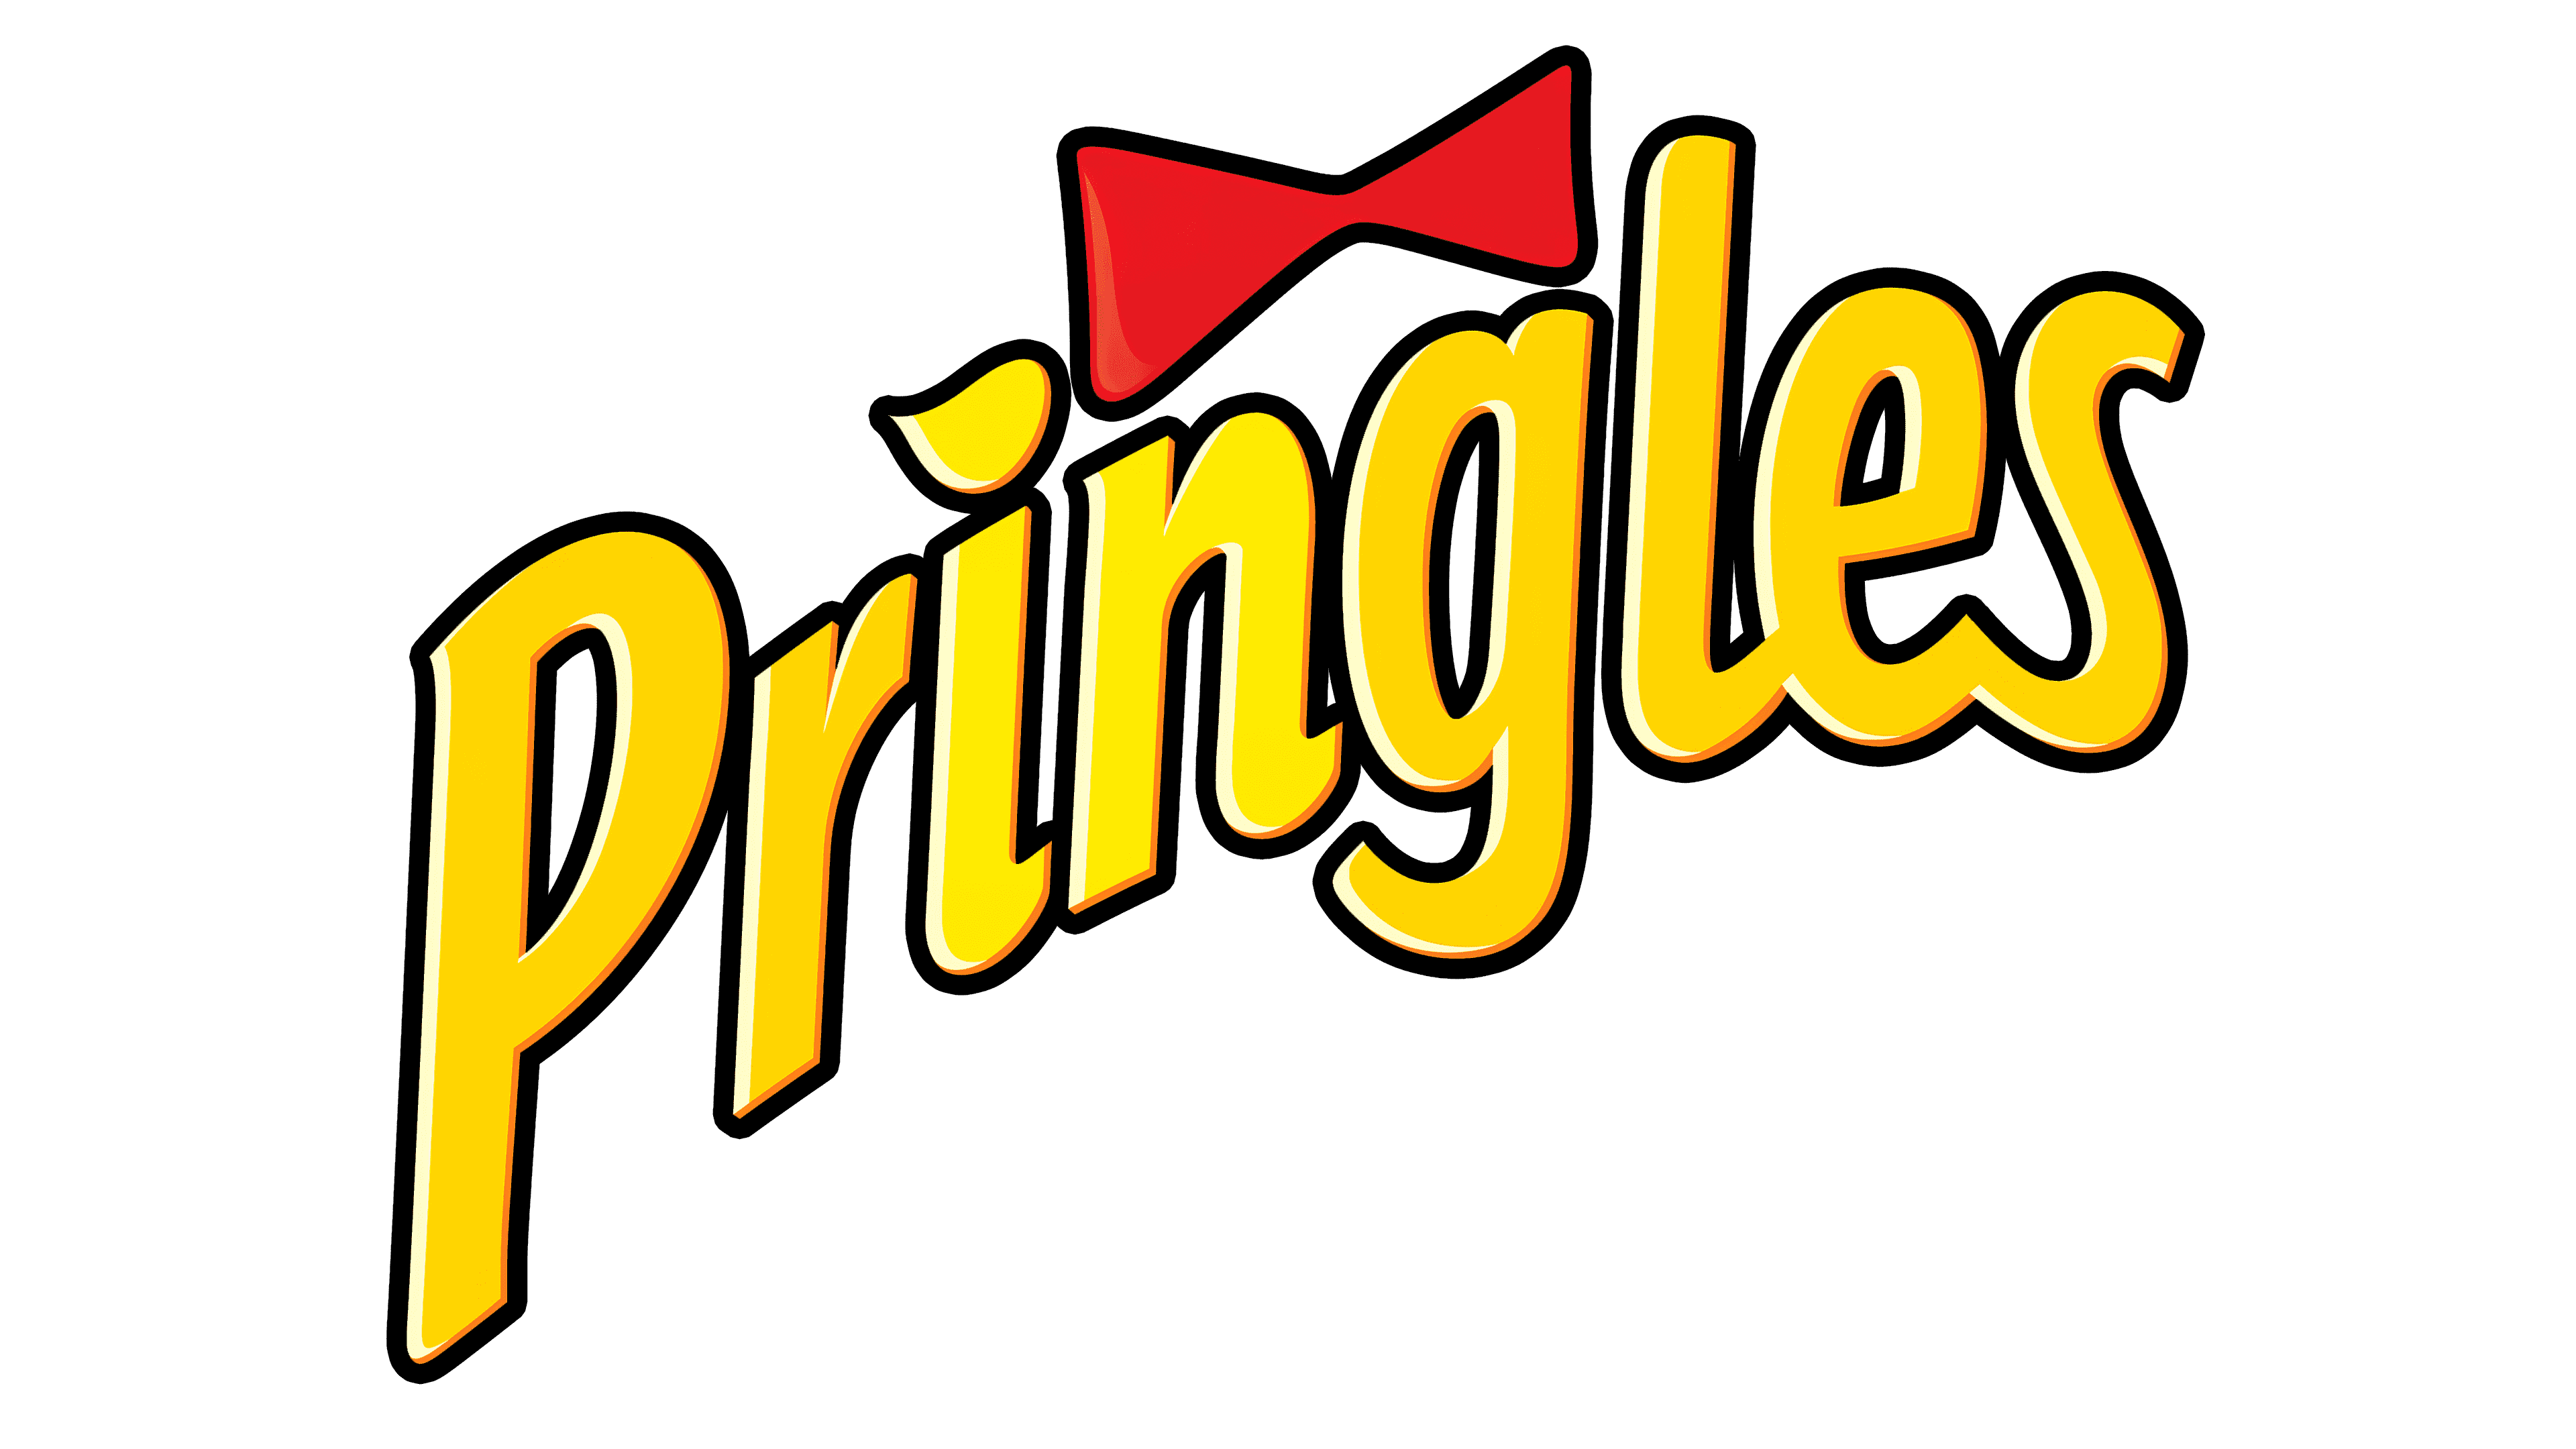 Pringles Face Logo